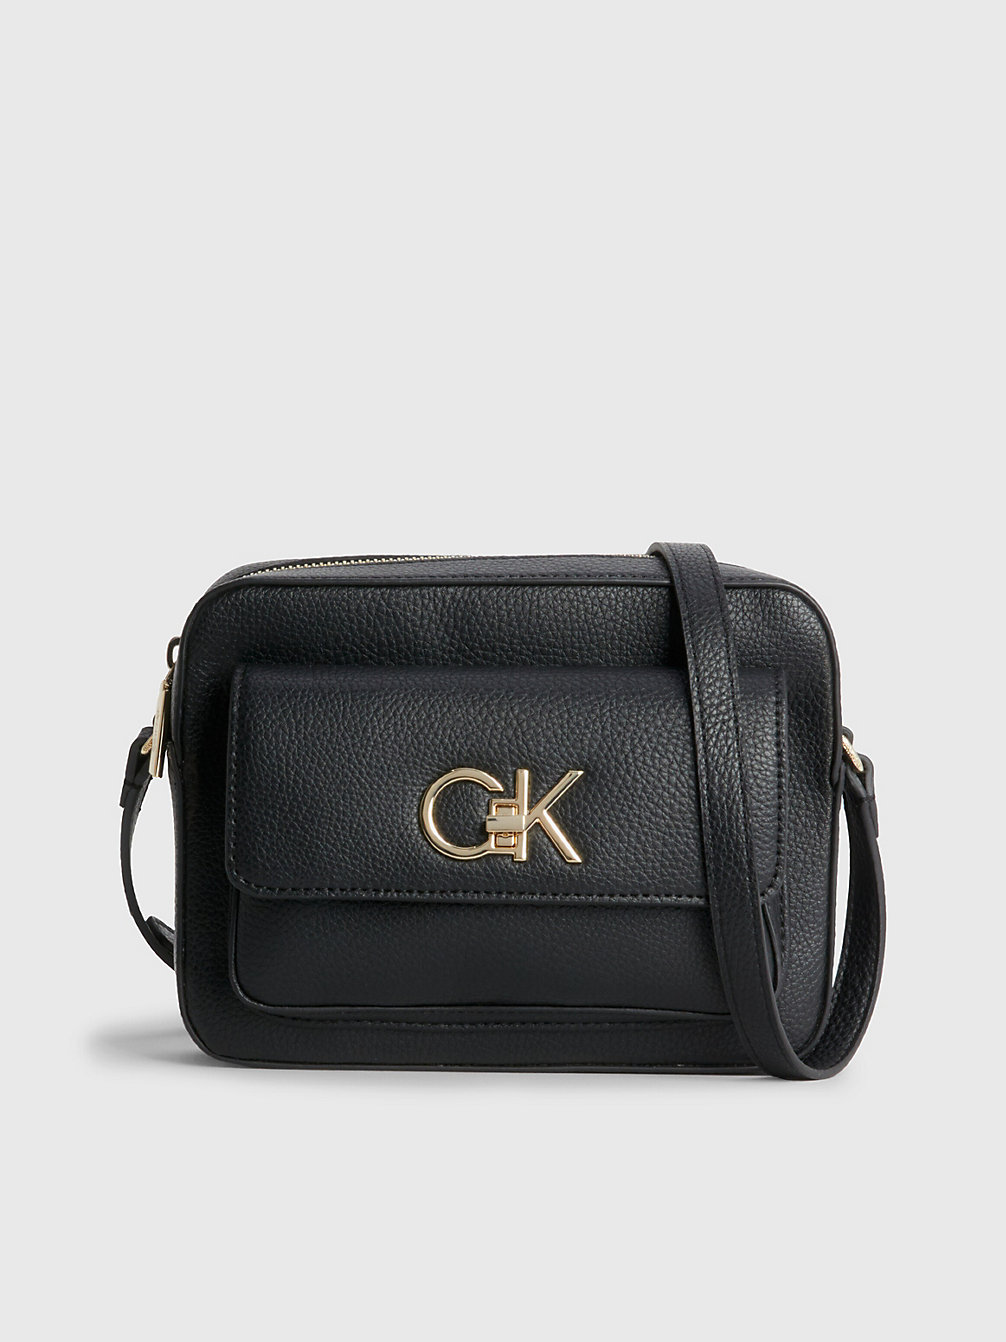 CK BLACK > Torba Przez Ramię Z Materiałów Z Recyklingu > undefined Kobiety - Calvin Klein